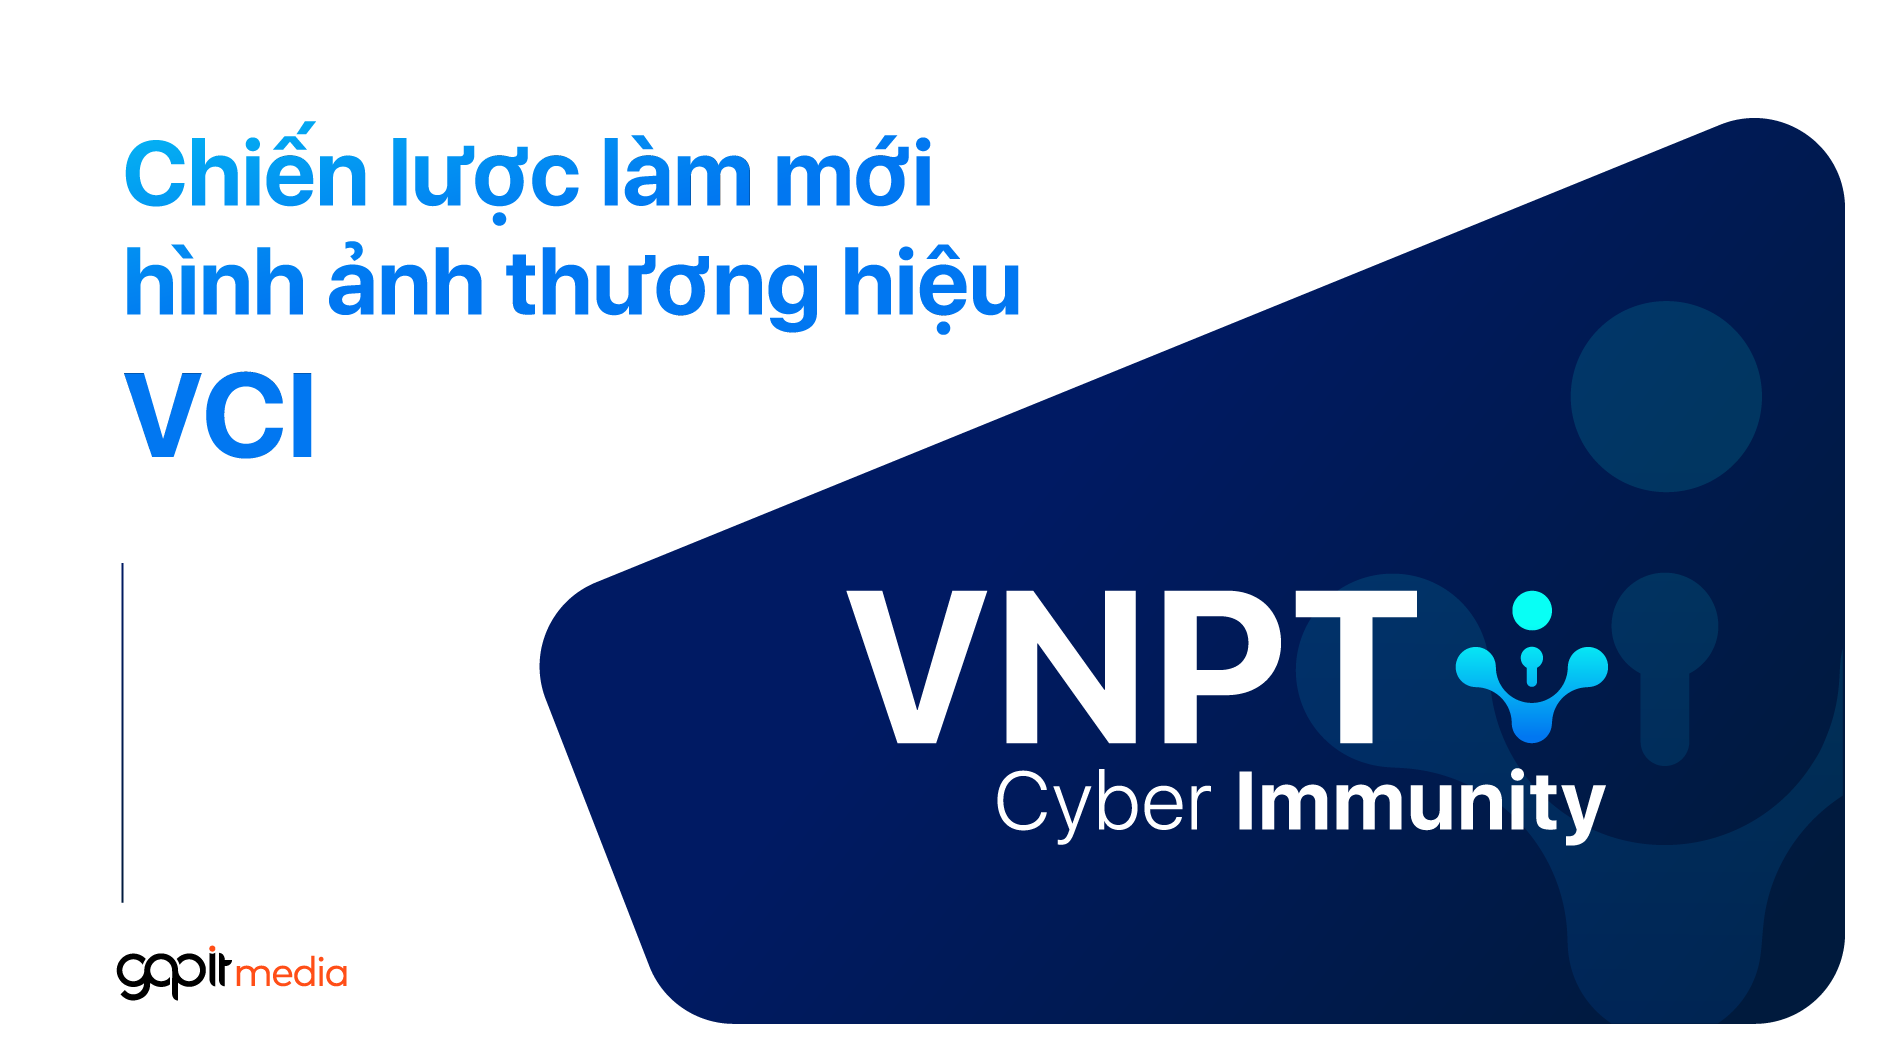 Chiến lược làm mới hình ảnh thương hiệu VNPT Cyber Immunity